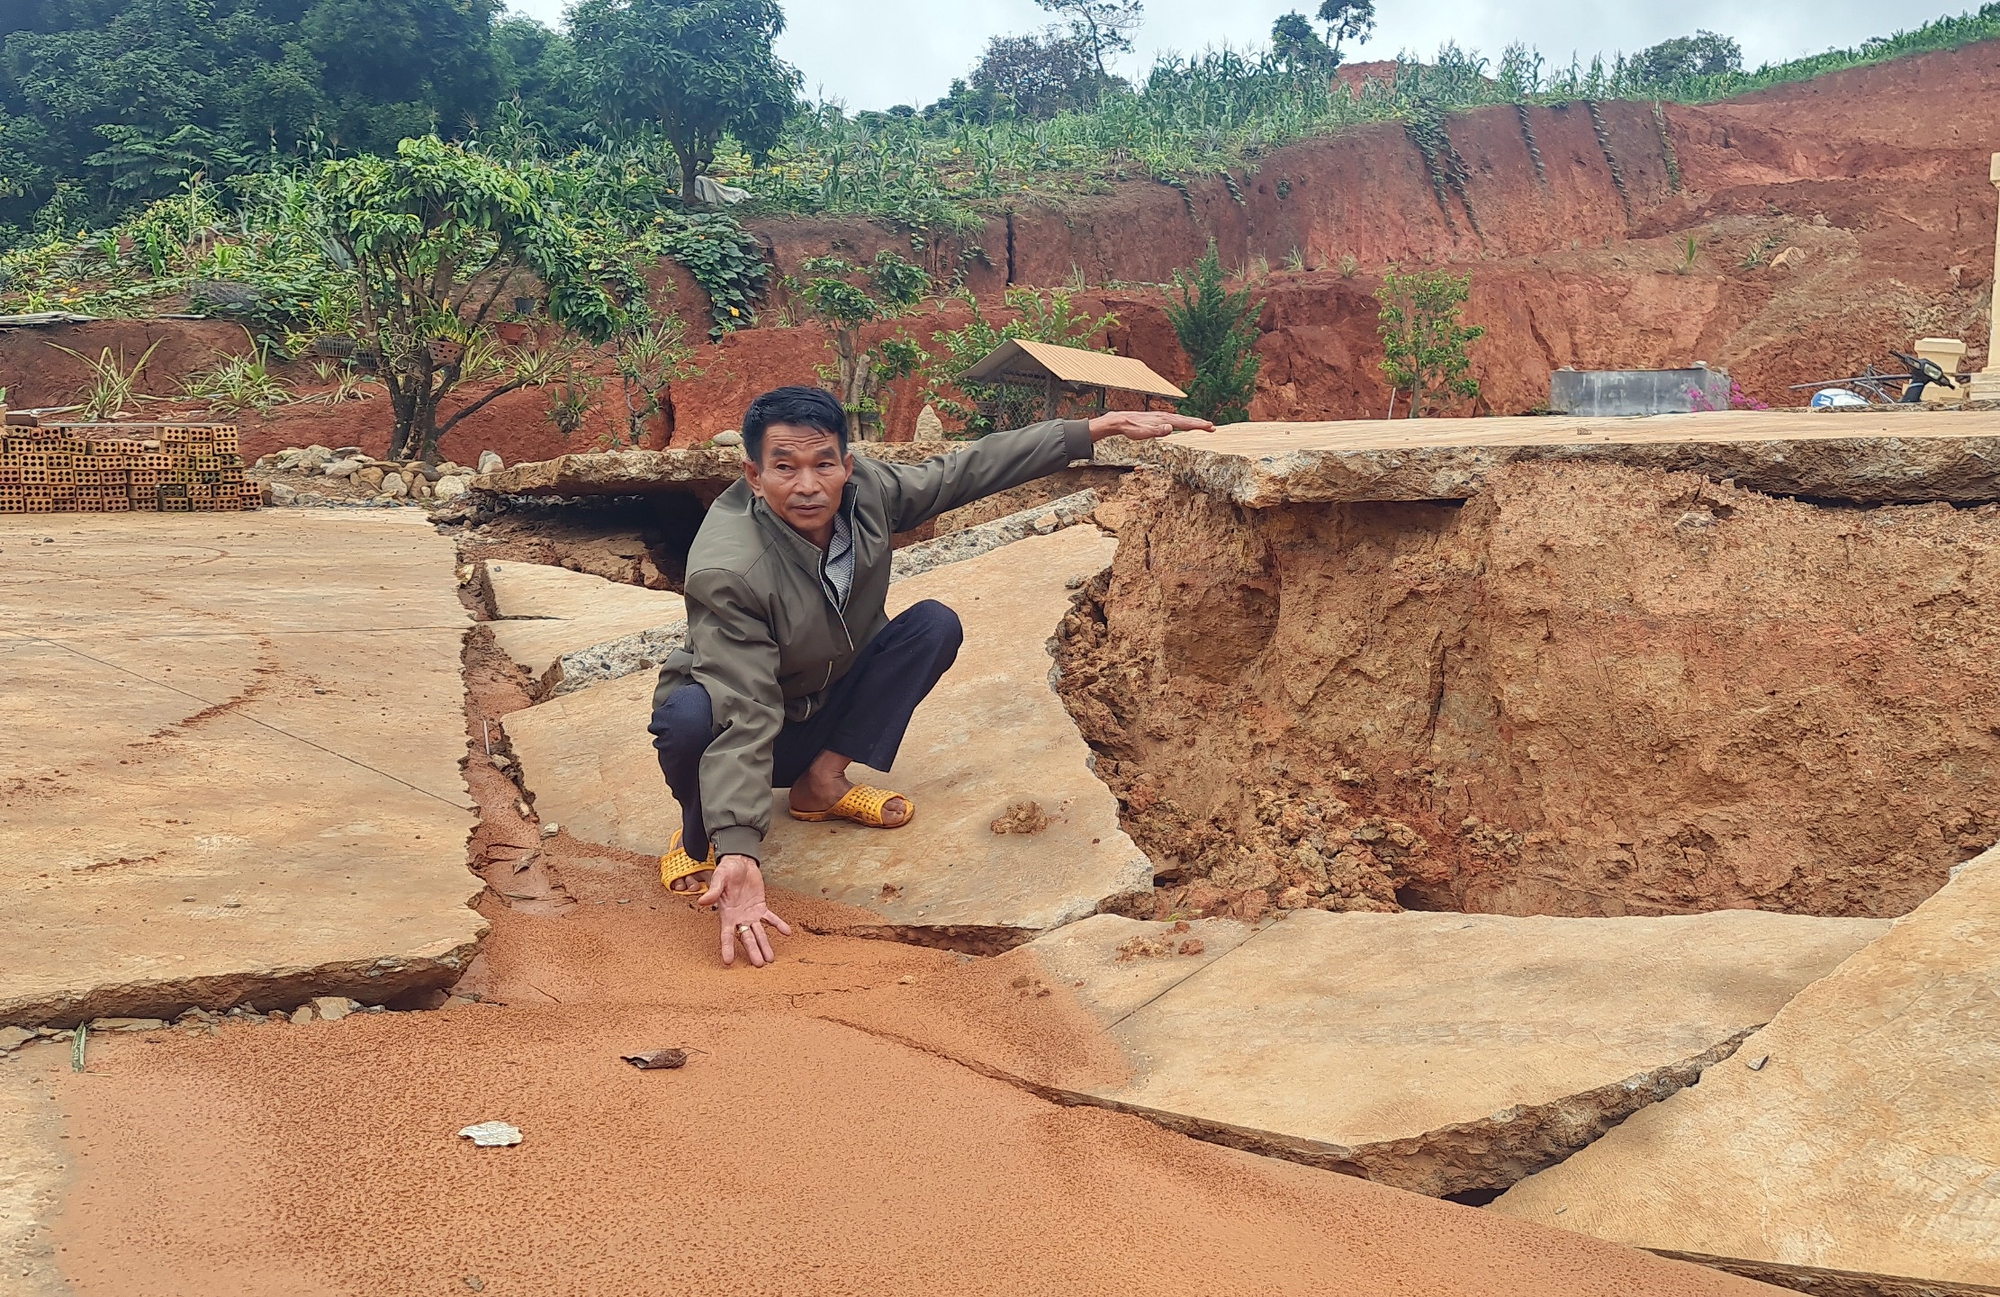 Lâm Đồng: Nhiều vết nứt vừa xuất hiện tại dự án hồ chứa nước 500 tỉ đồng - Ảnh 5.